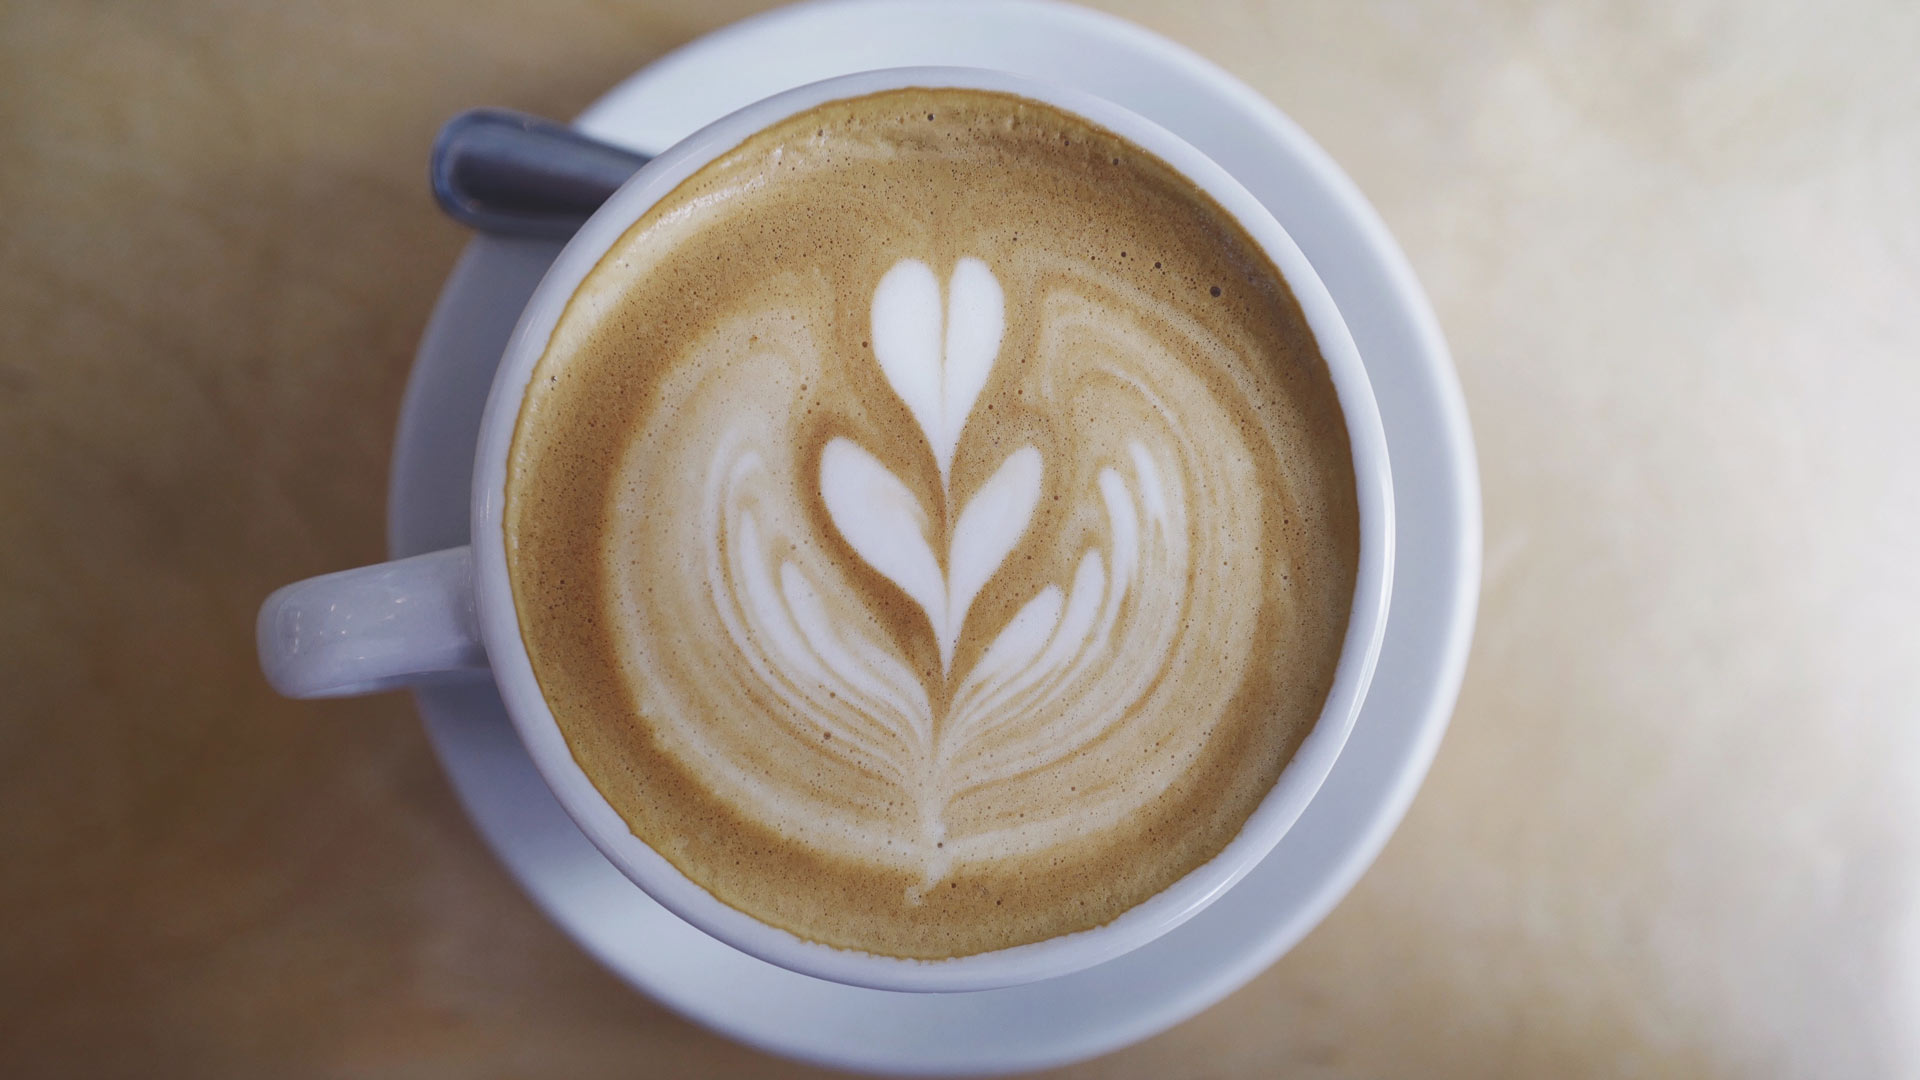 ¿Qué le pasa a nuestro cuerpo cuando bebemos café?